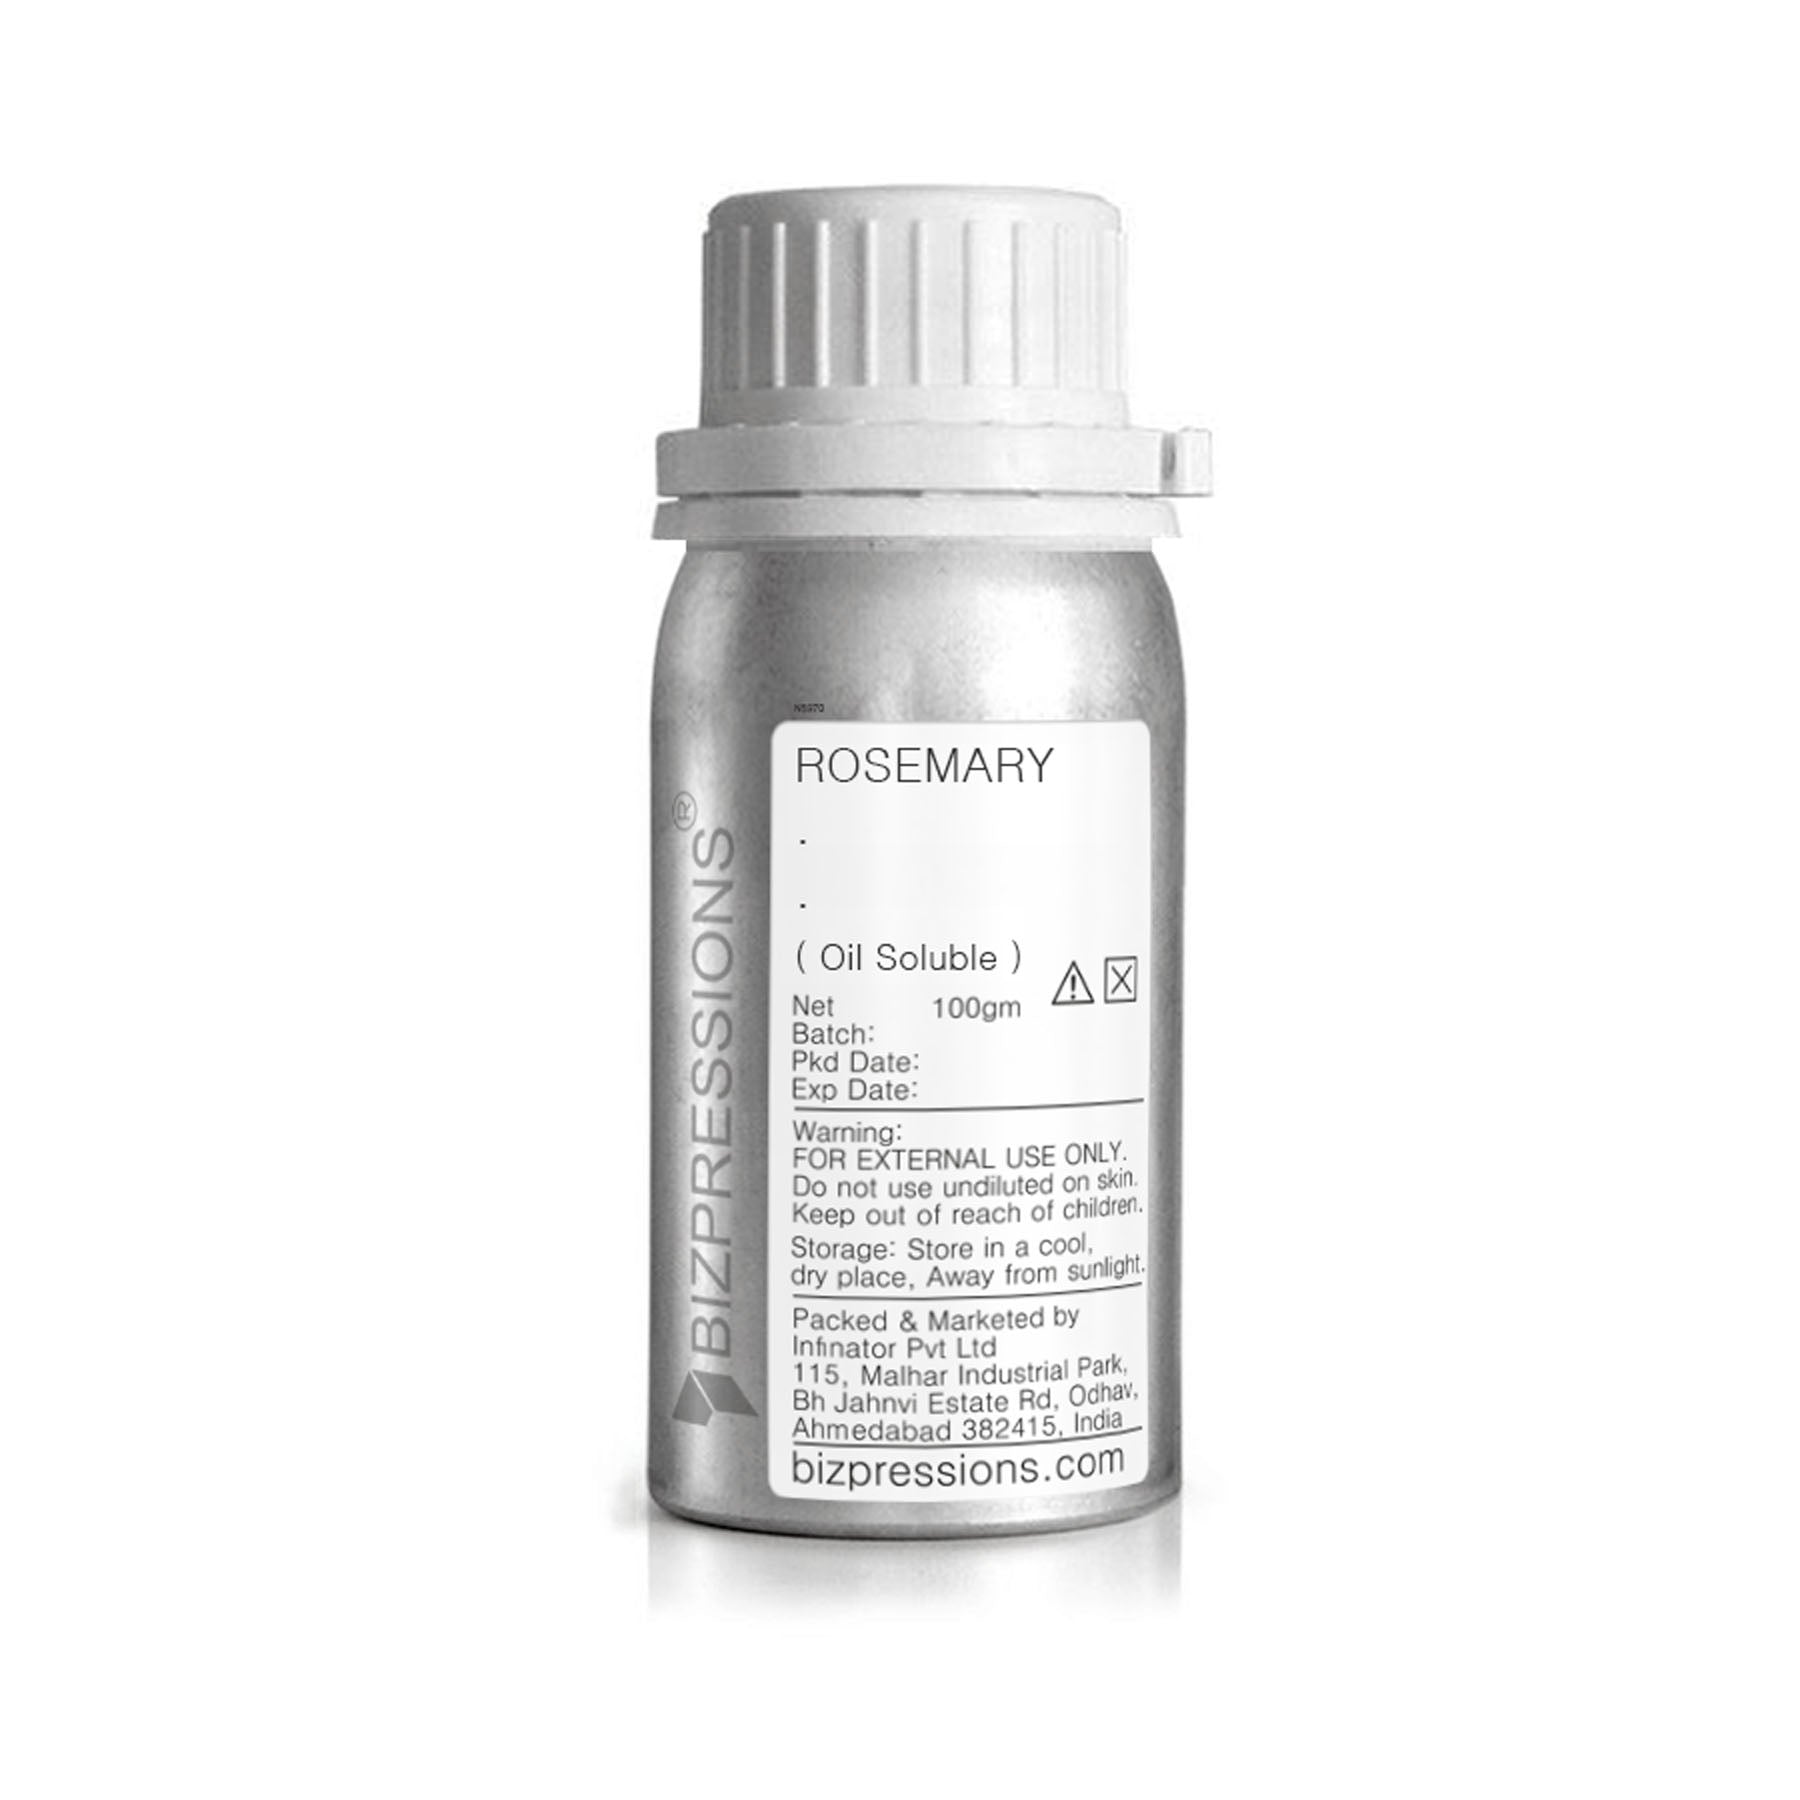 ROSEMARY AG - Fragrance ( Oil Soluble ) - 100 gm